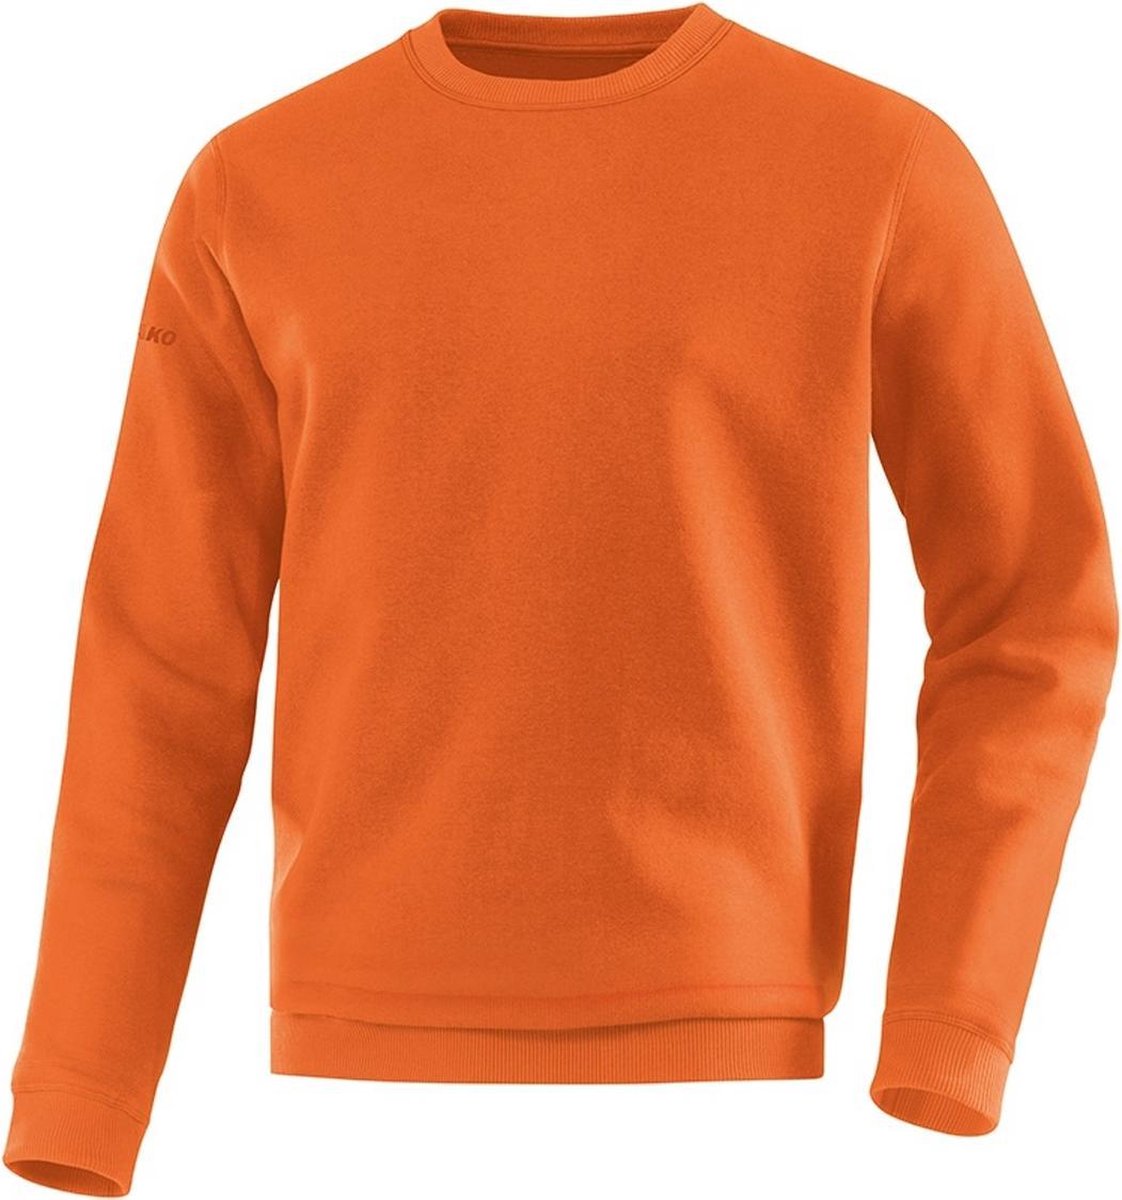 Jako - Sweater Team Junior - Sweater Junior Oranje - 128 - fluooranje